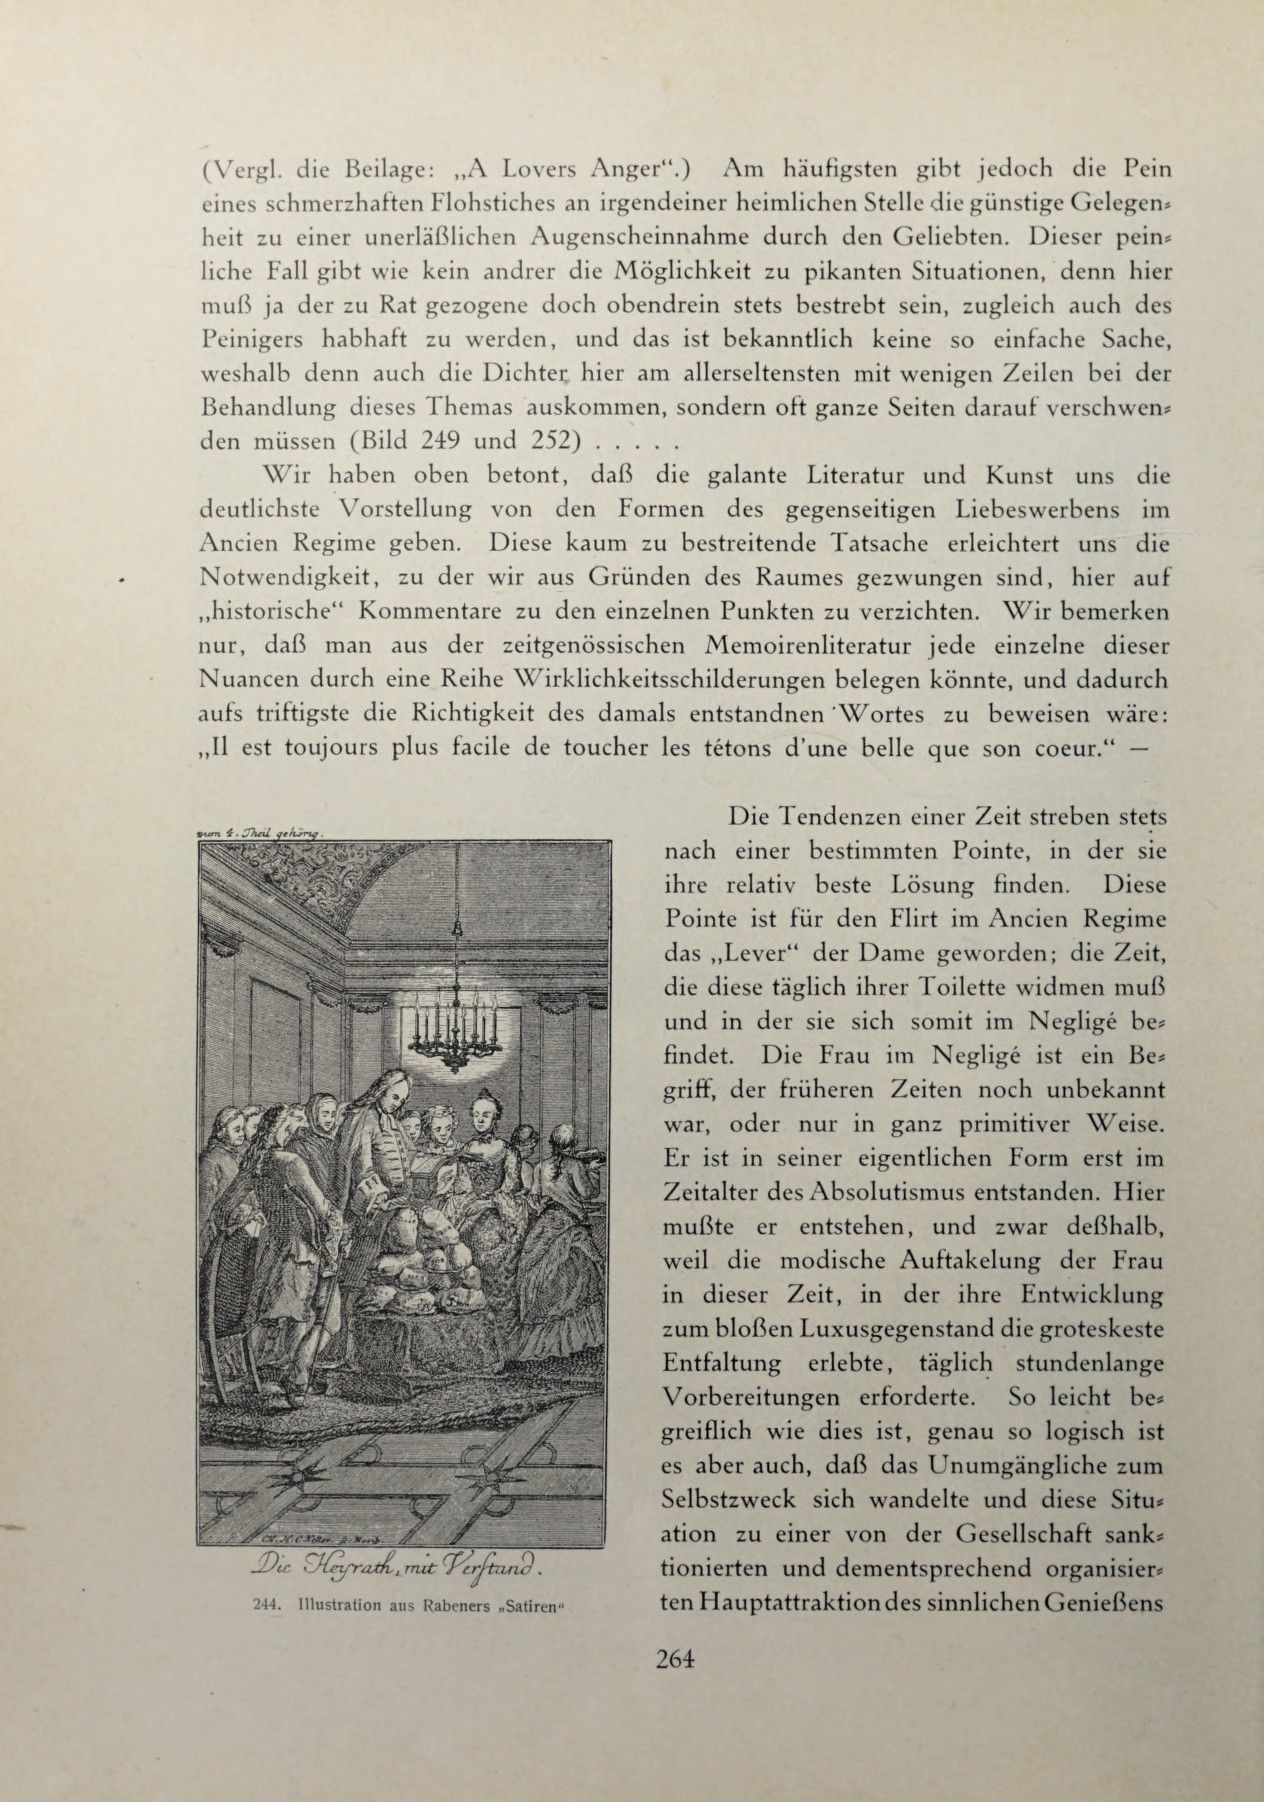 [Eduard Fuchs] Illustrierte Sittengeschichte vom Mittelalter bis zur Gegenwart: Bd. 2. and Ergänzungsband. Die galante Zeit [German] 383